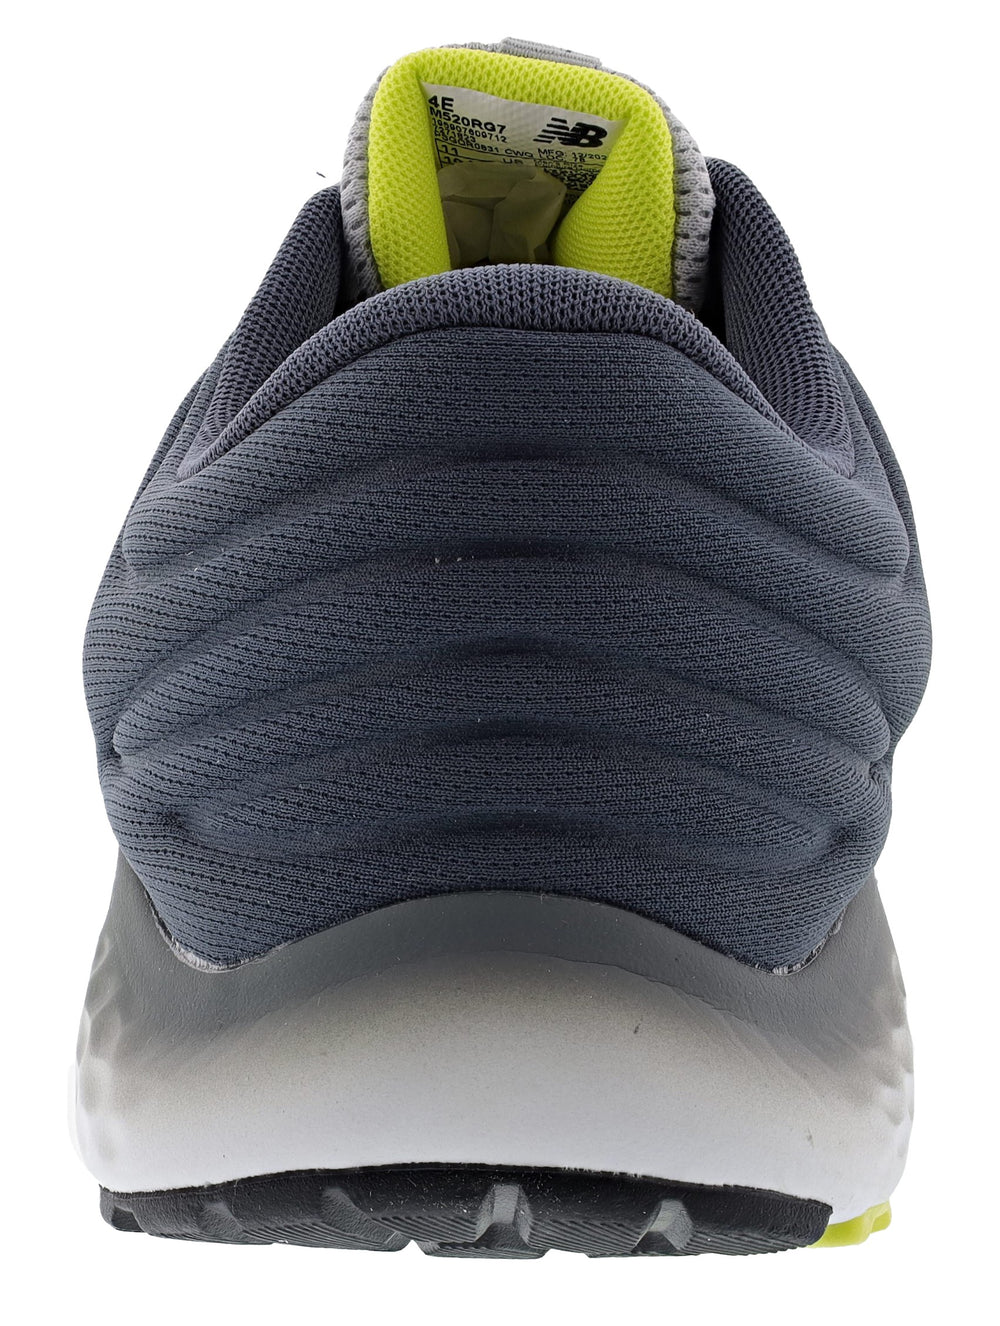 New Balance v7 Lightweight Running Shoes-Men | Shoe